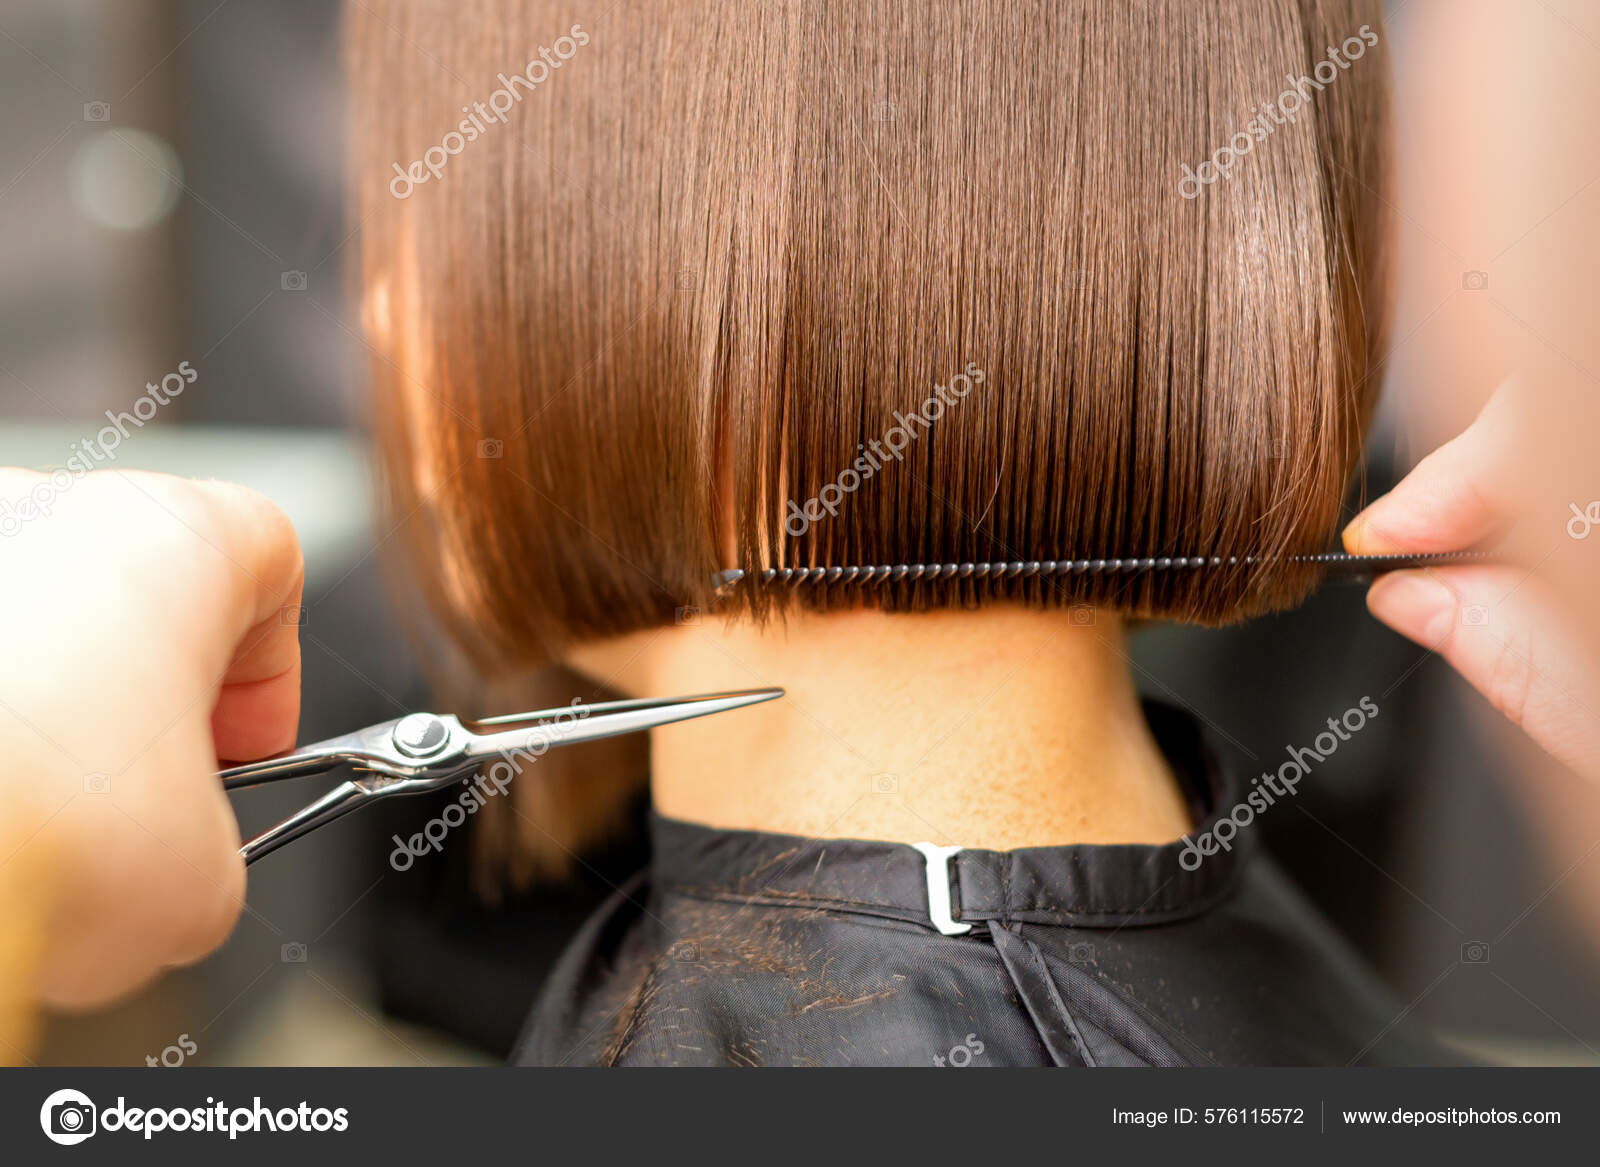 Salão. close-up de um corte de cabelo feminino, mestre em uma